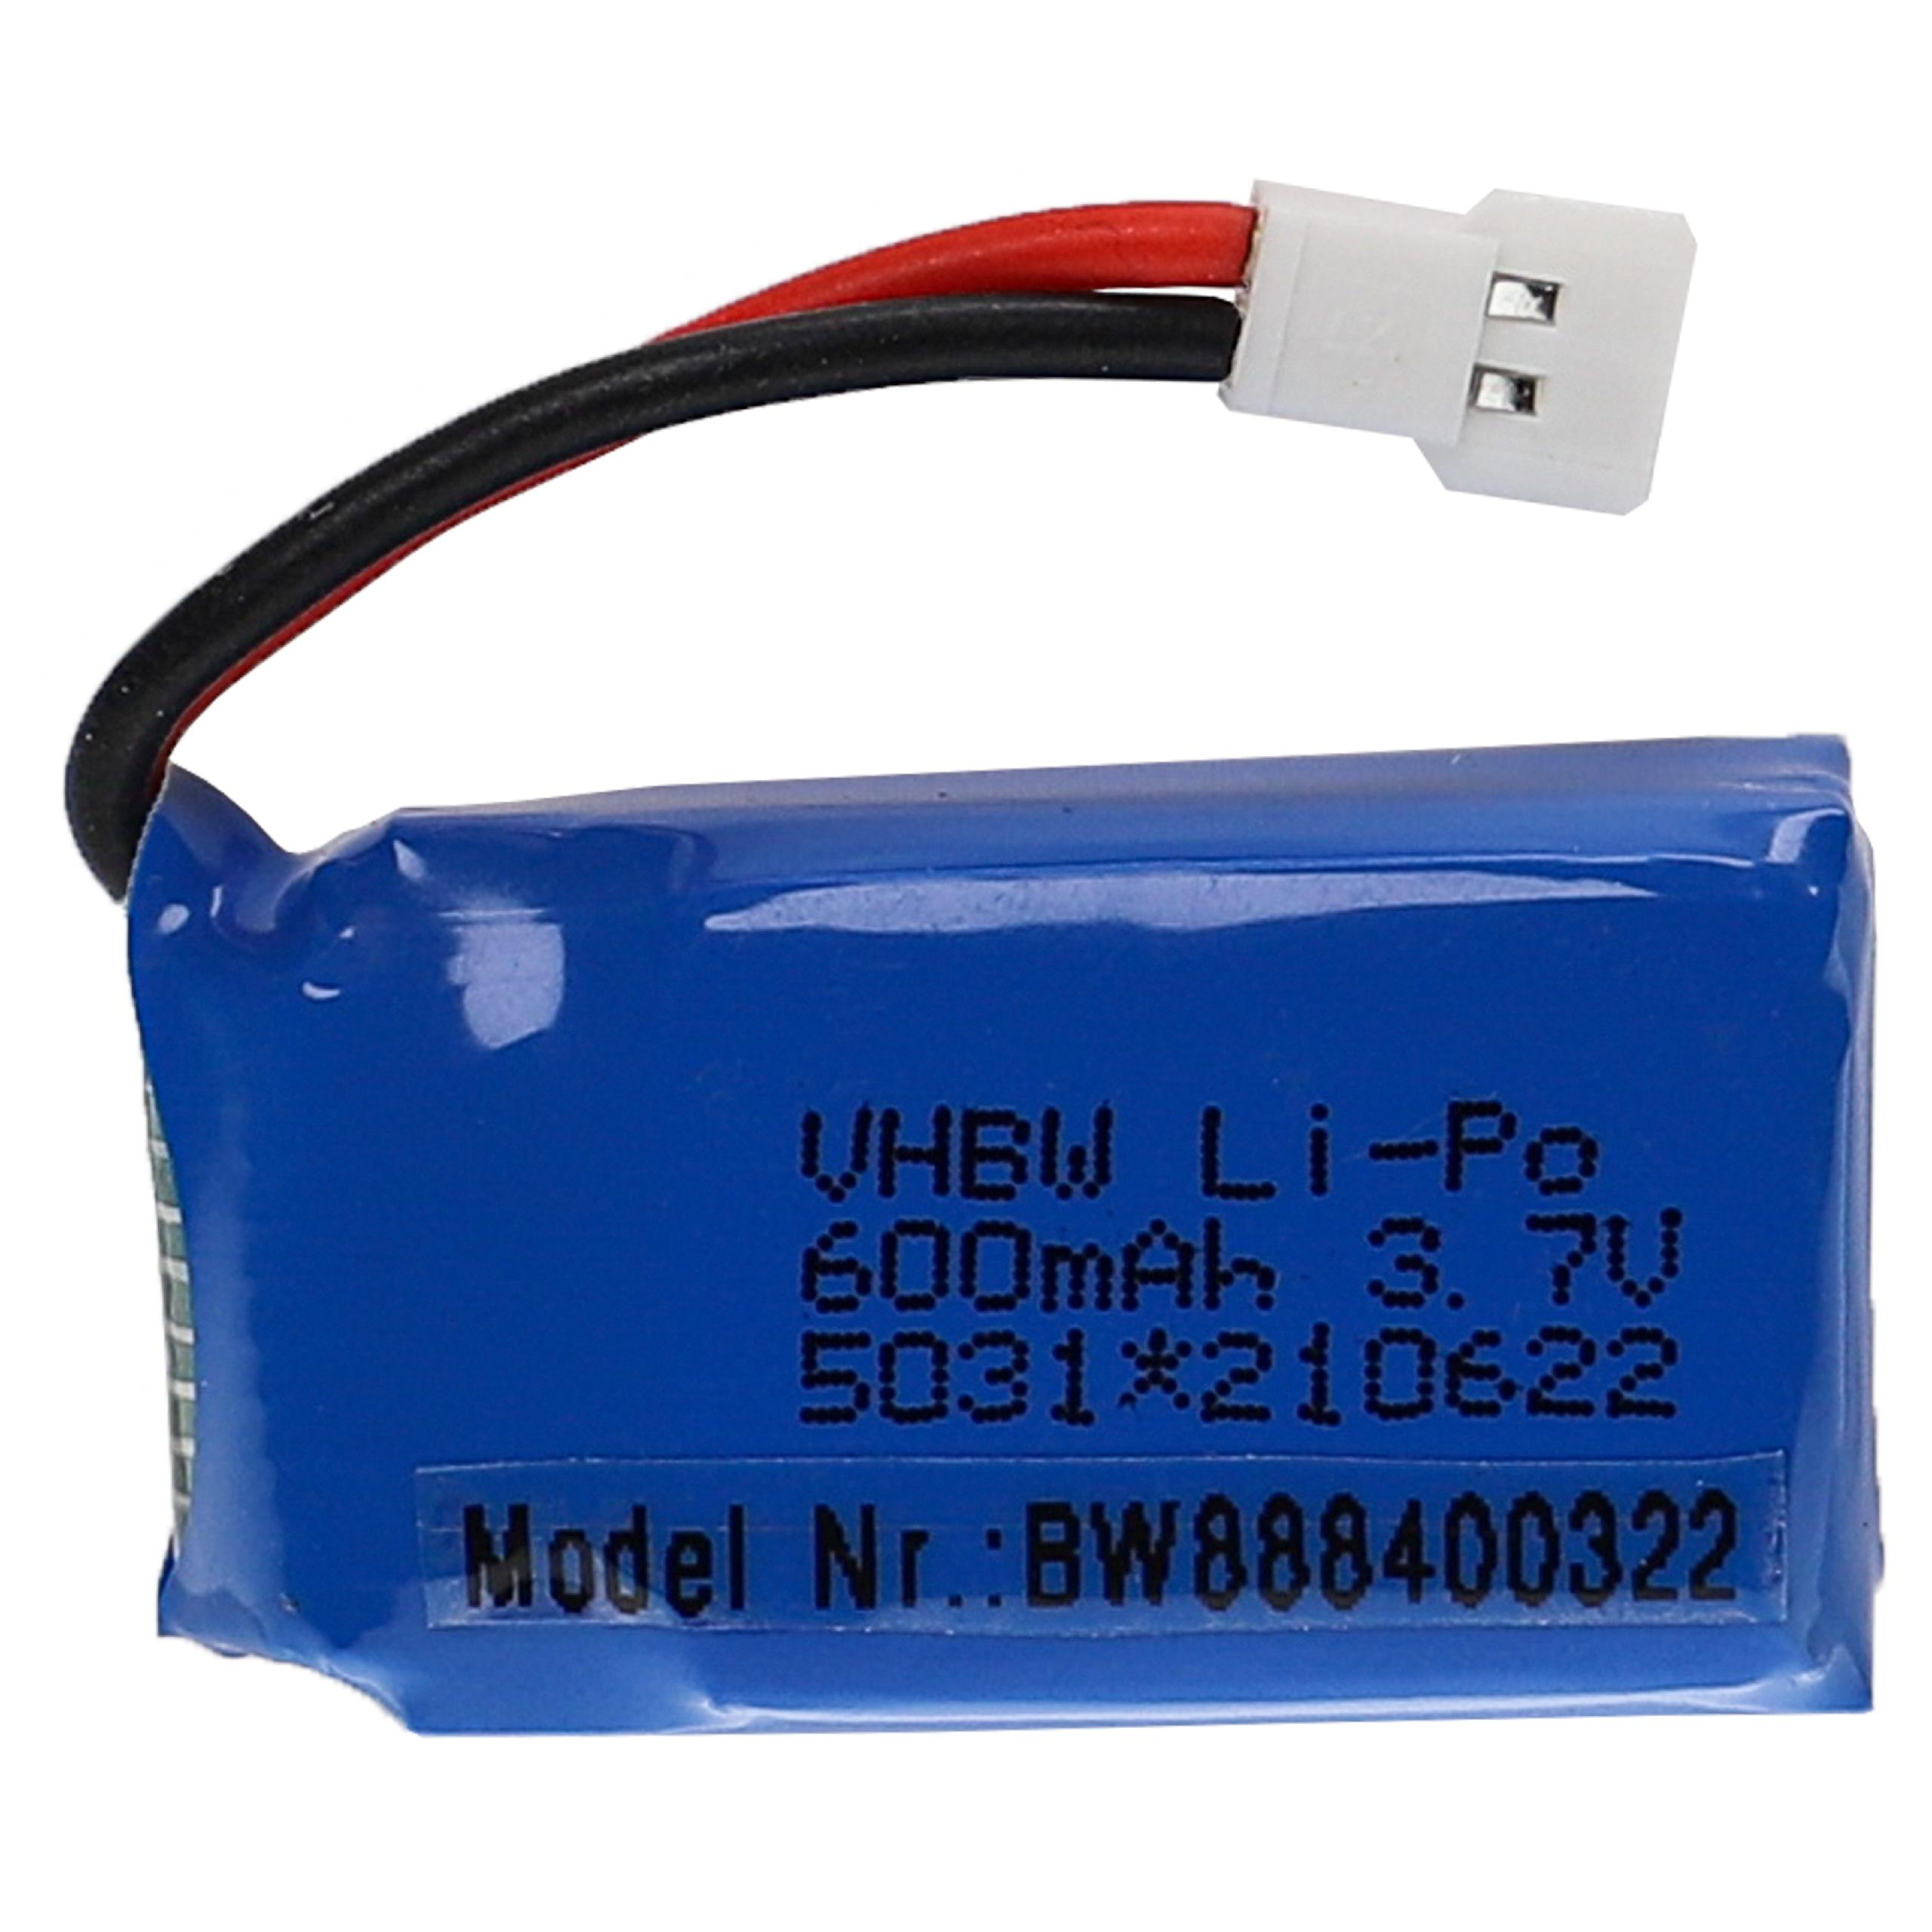 Batterie pour modèle radio-télécommandé - 600mAh 3,7V Li-polymère, XH 2.54 2P